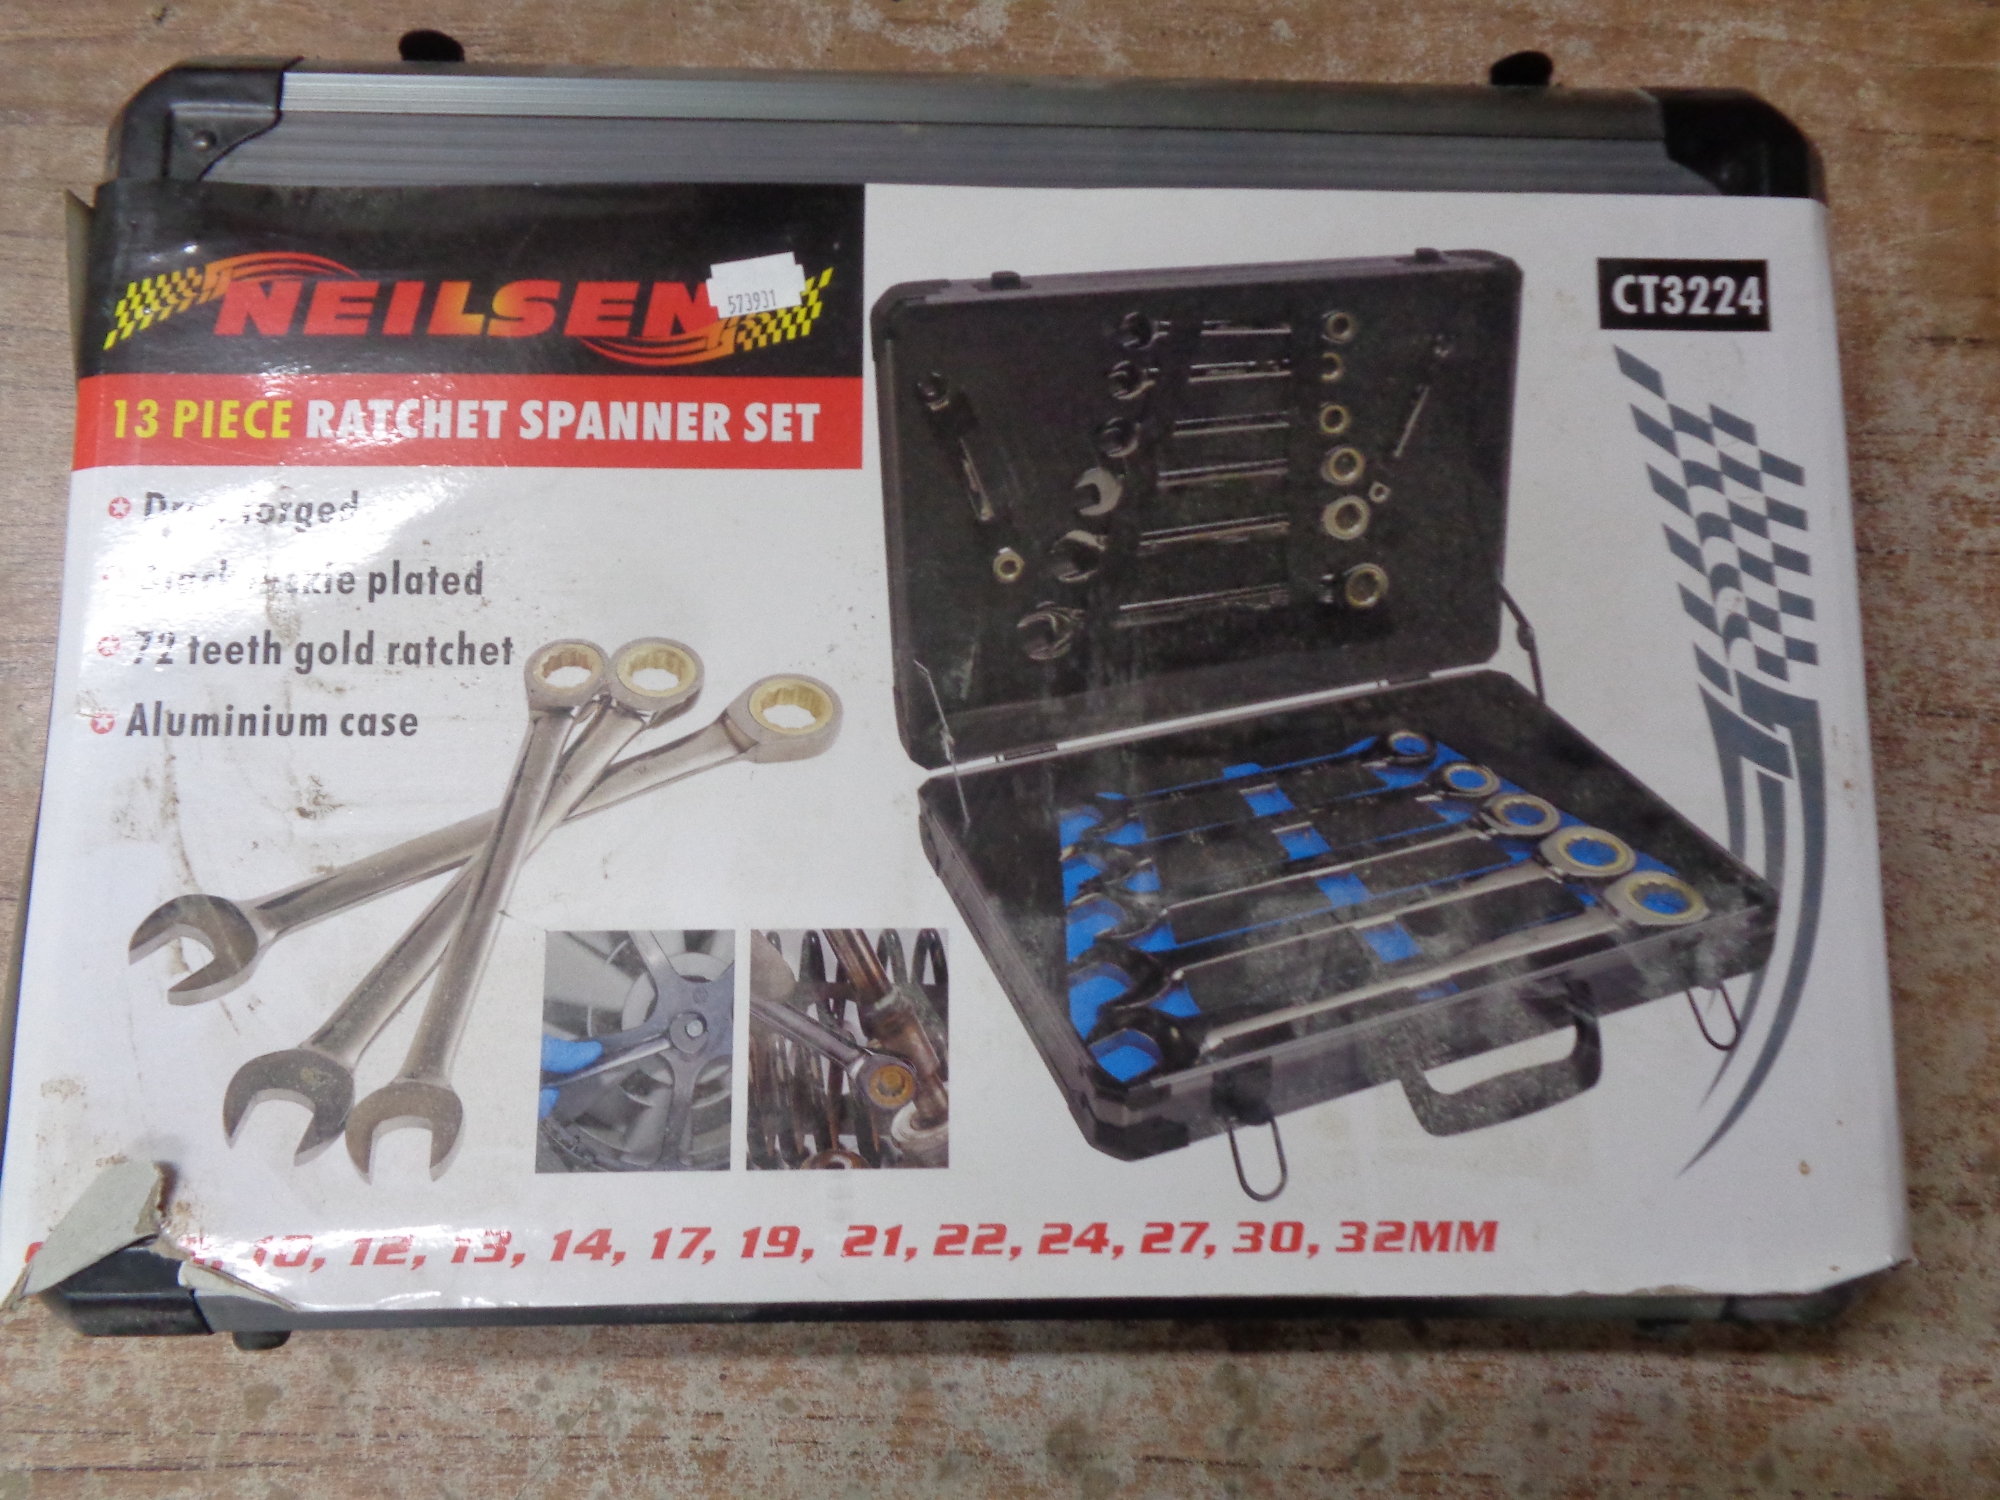 A boxed Neilsen 13 piece ratchet spanner set